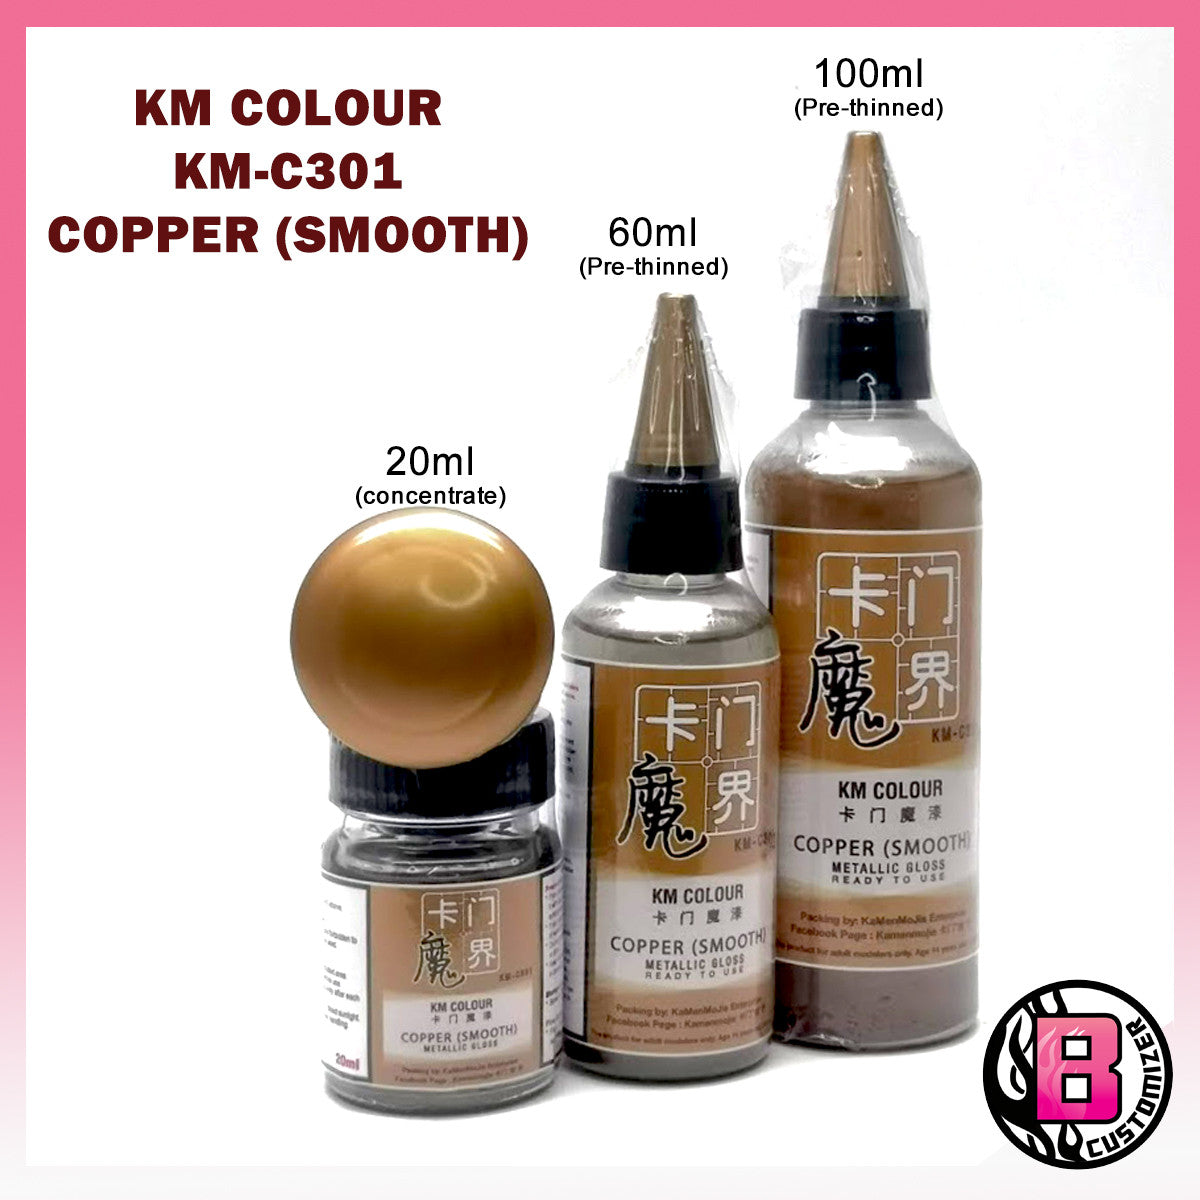 KM Colour Copper Smooth (KM-C301)